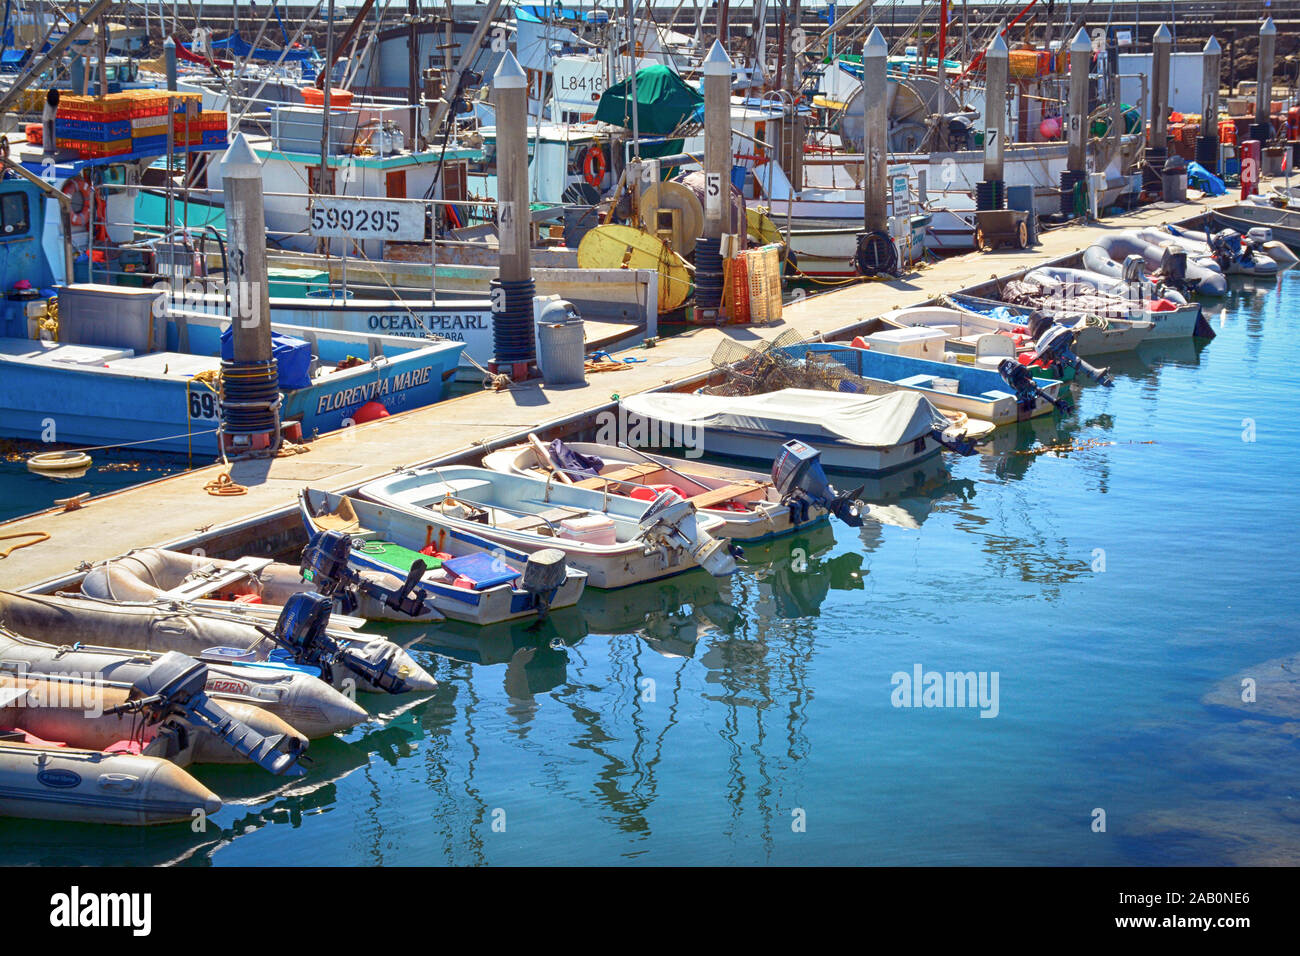 Une scène colorée de petits bateaux, bateaux de pêche commerciale et dériveurs,amarré à quai dans la marina au Port de Santa Barbara en Californie Banque D'Images